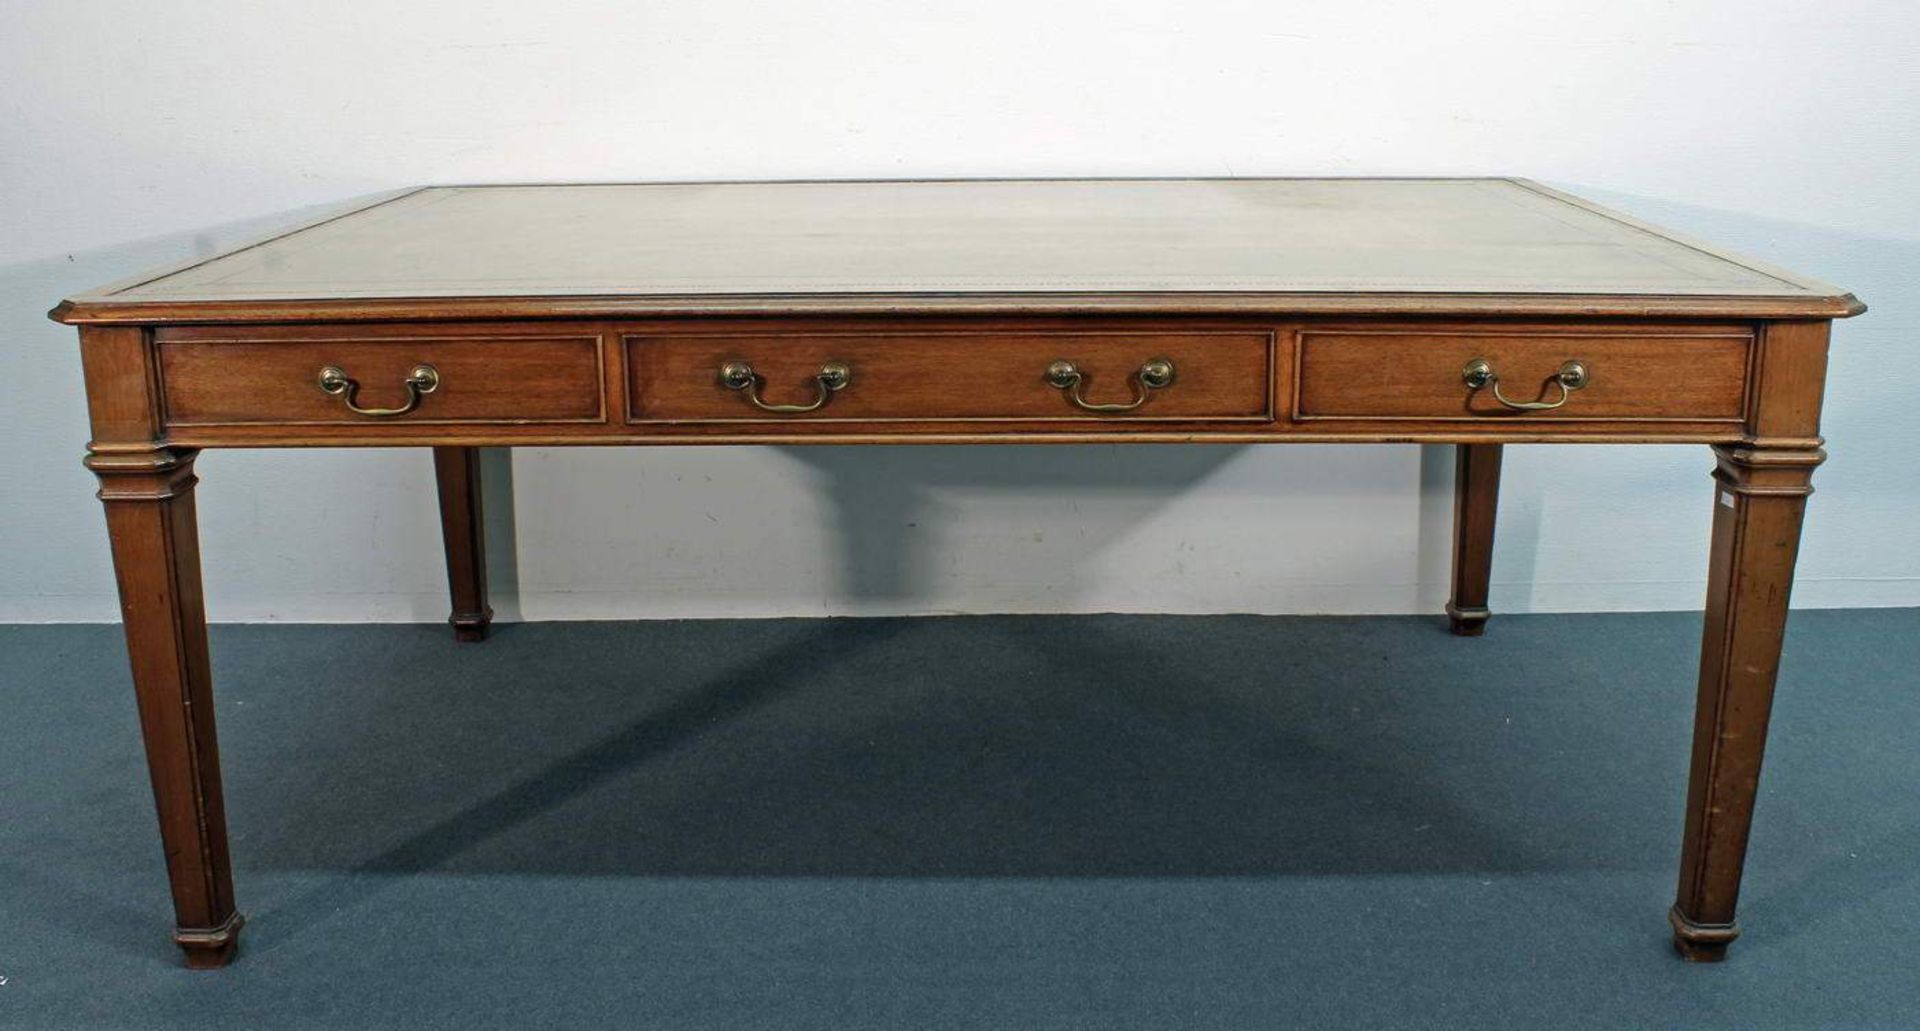 Schreibtisch, England, um 1900, drei Schübe, Rückseite drei Blendschübe, eingelassene Lederplatte,